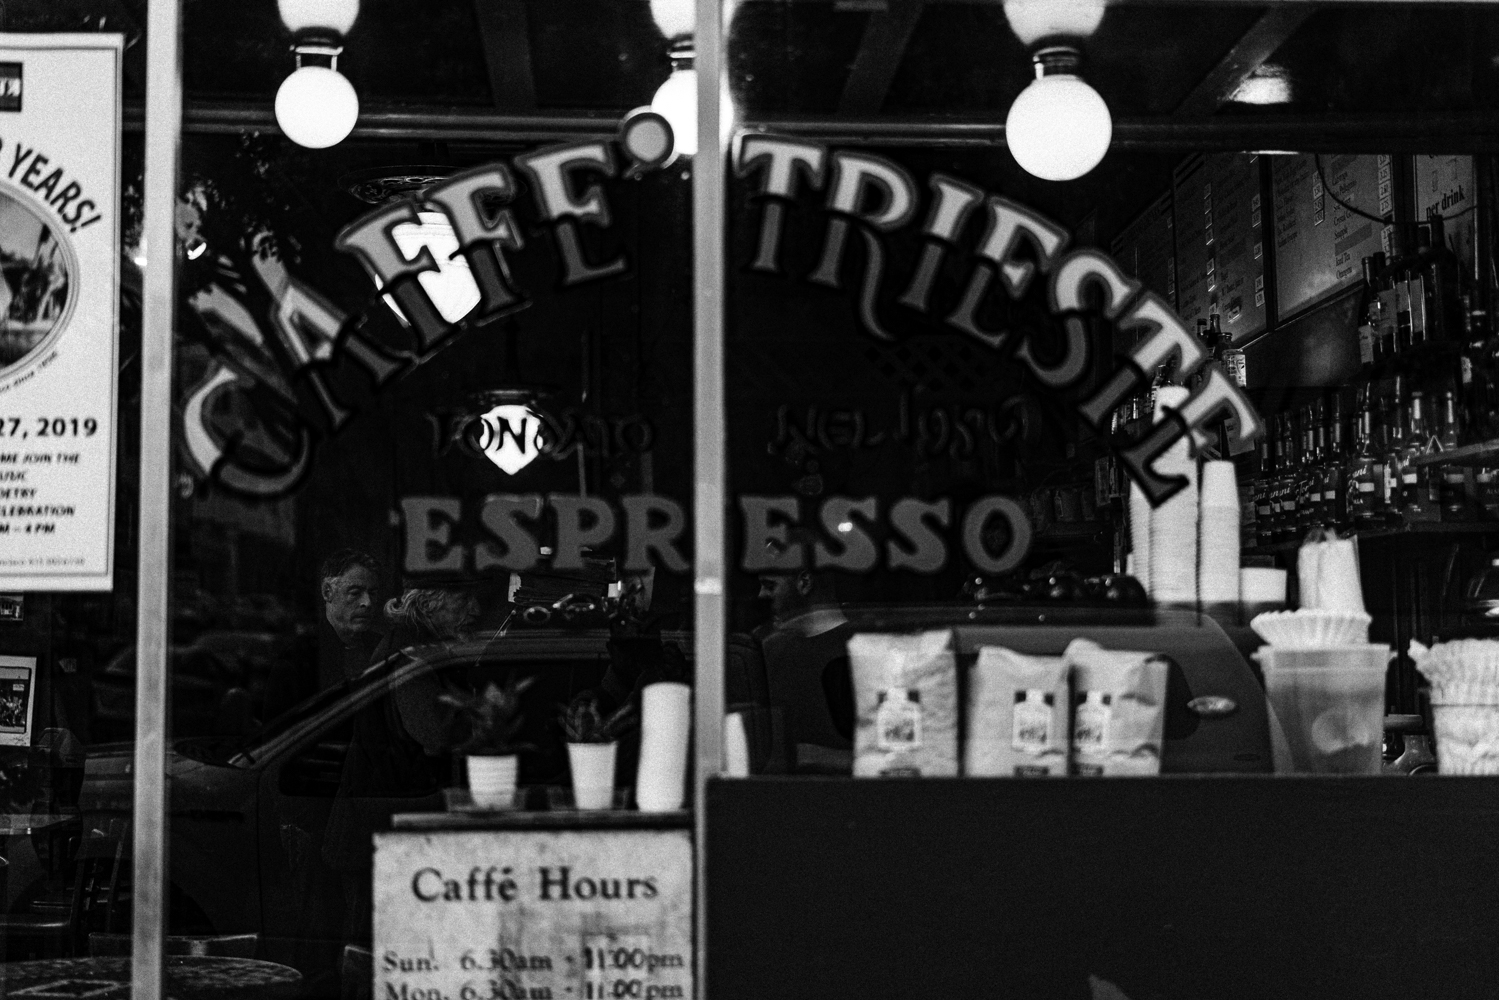 Caffe Trieste